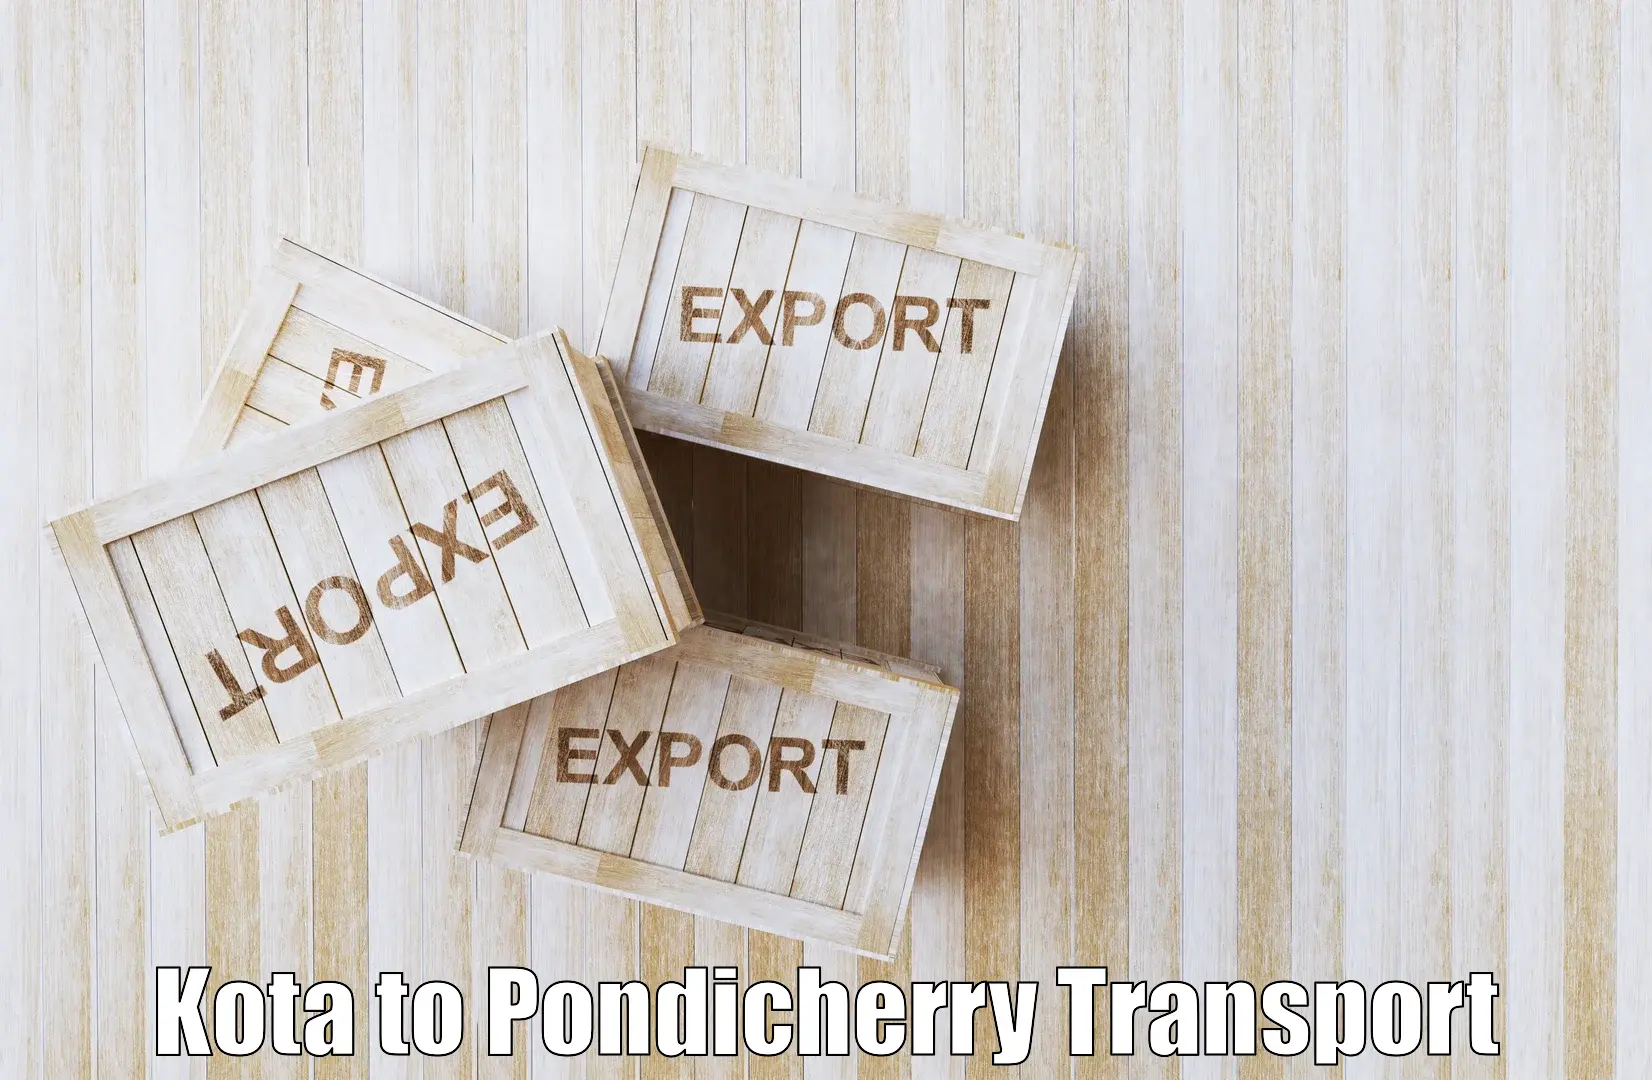 International cargo transportation services Kota to Pondicherry University